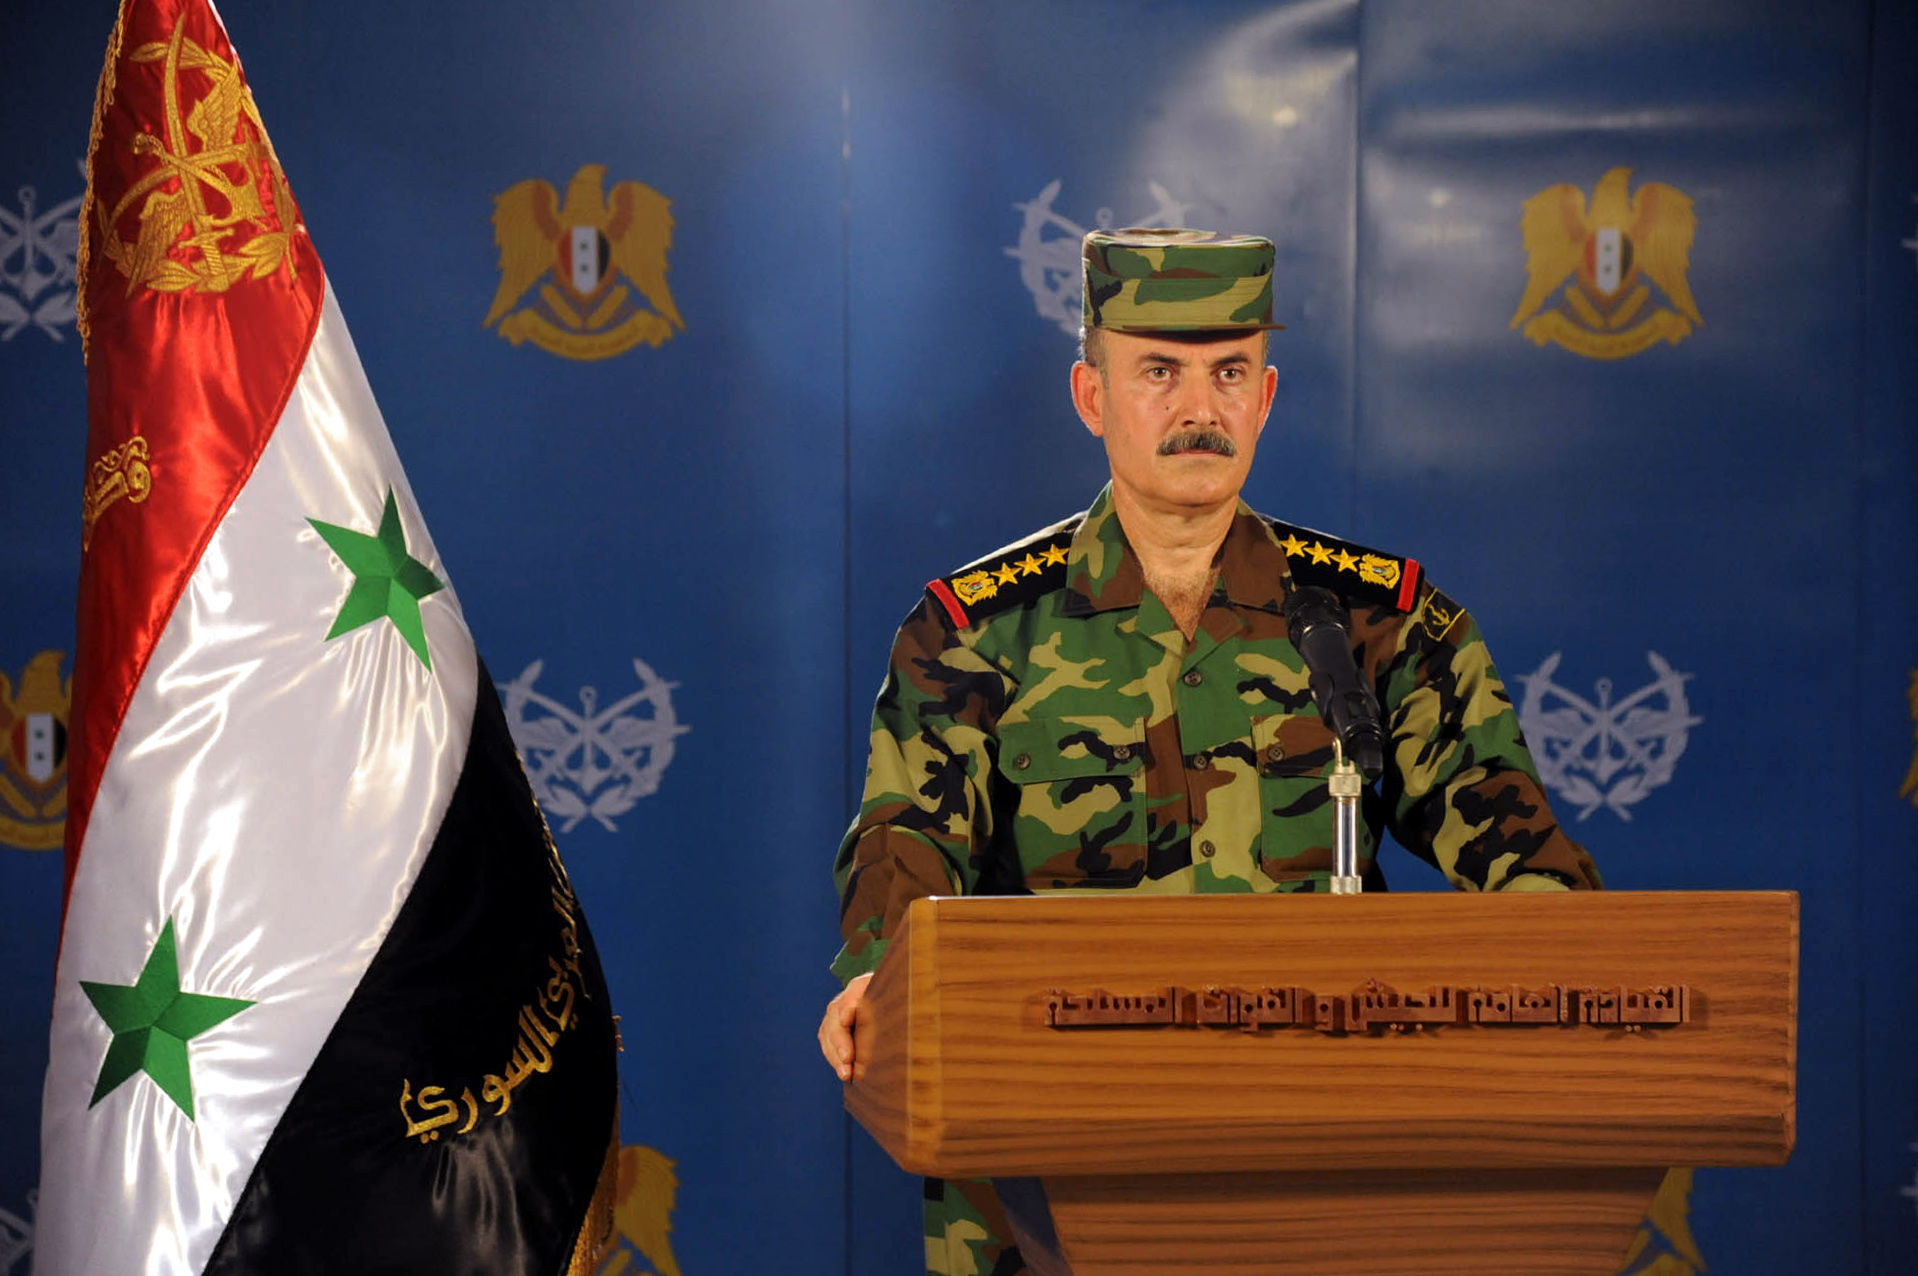  الجيش السوري يعلن عن إنجازات نوعية بريف إدلب 